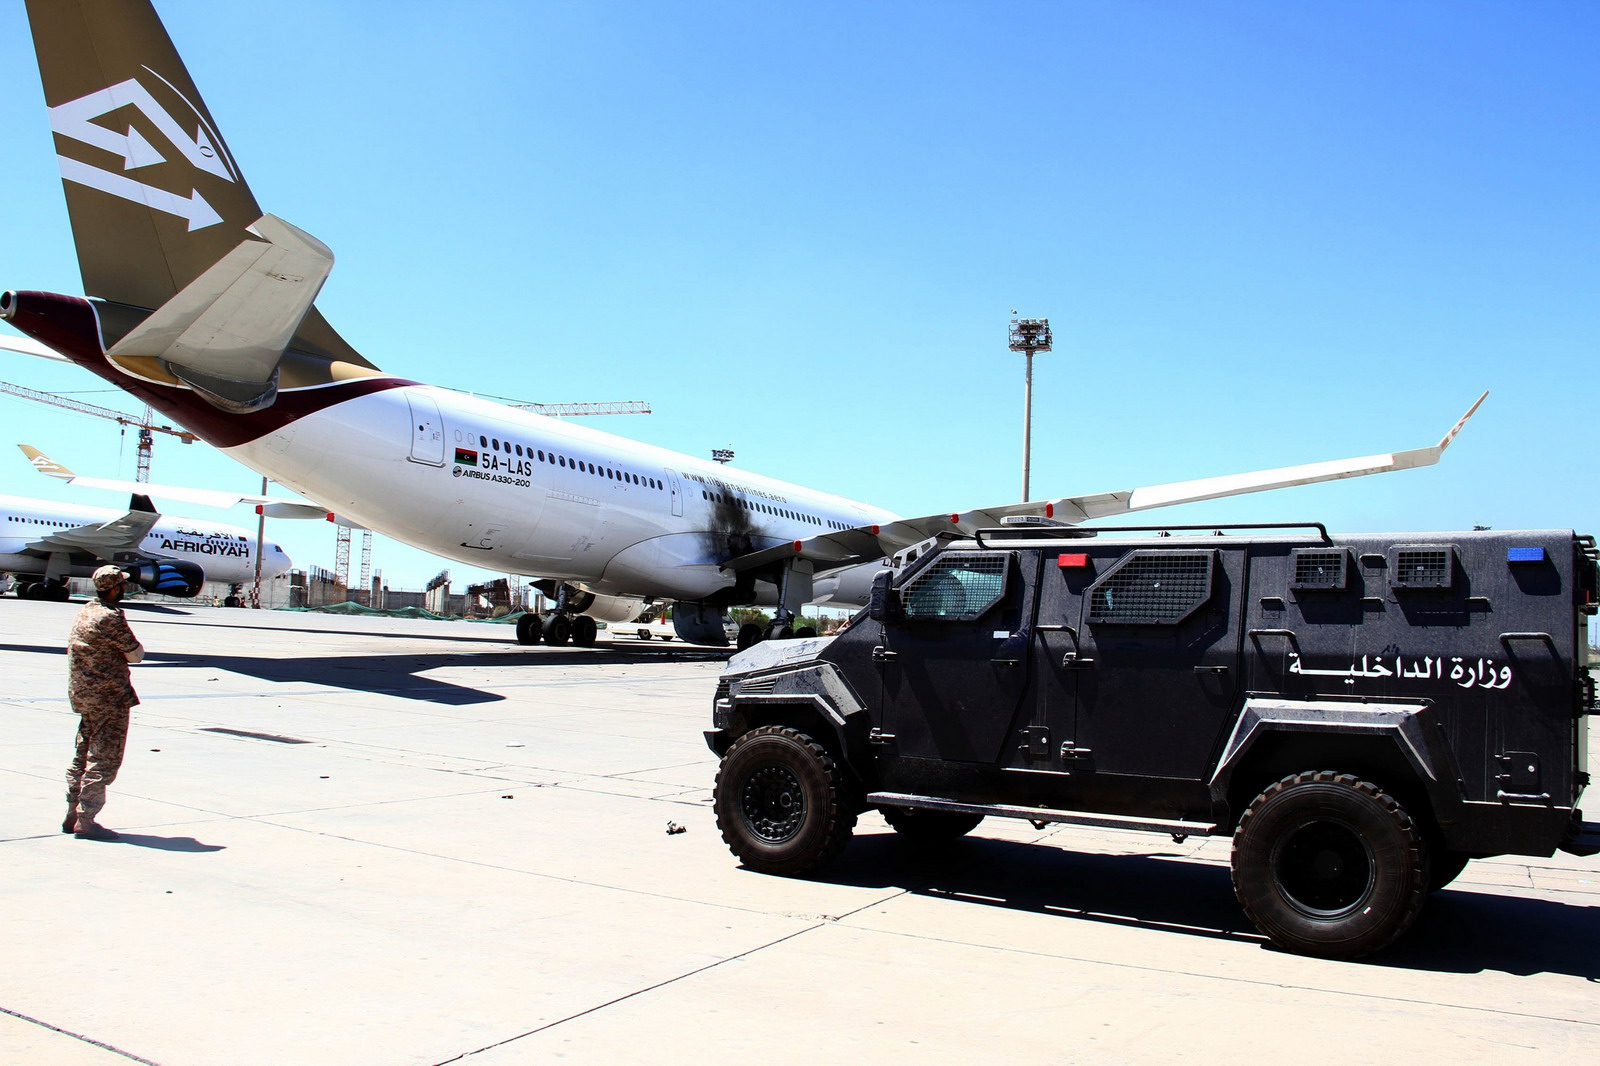 Több mint kínos: A repülőtéren tartóztatták fel a líbiai kormányfőt